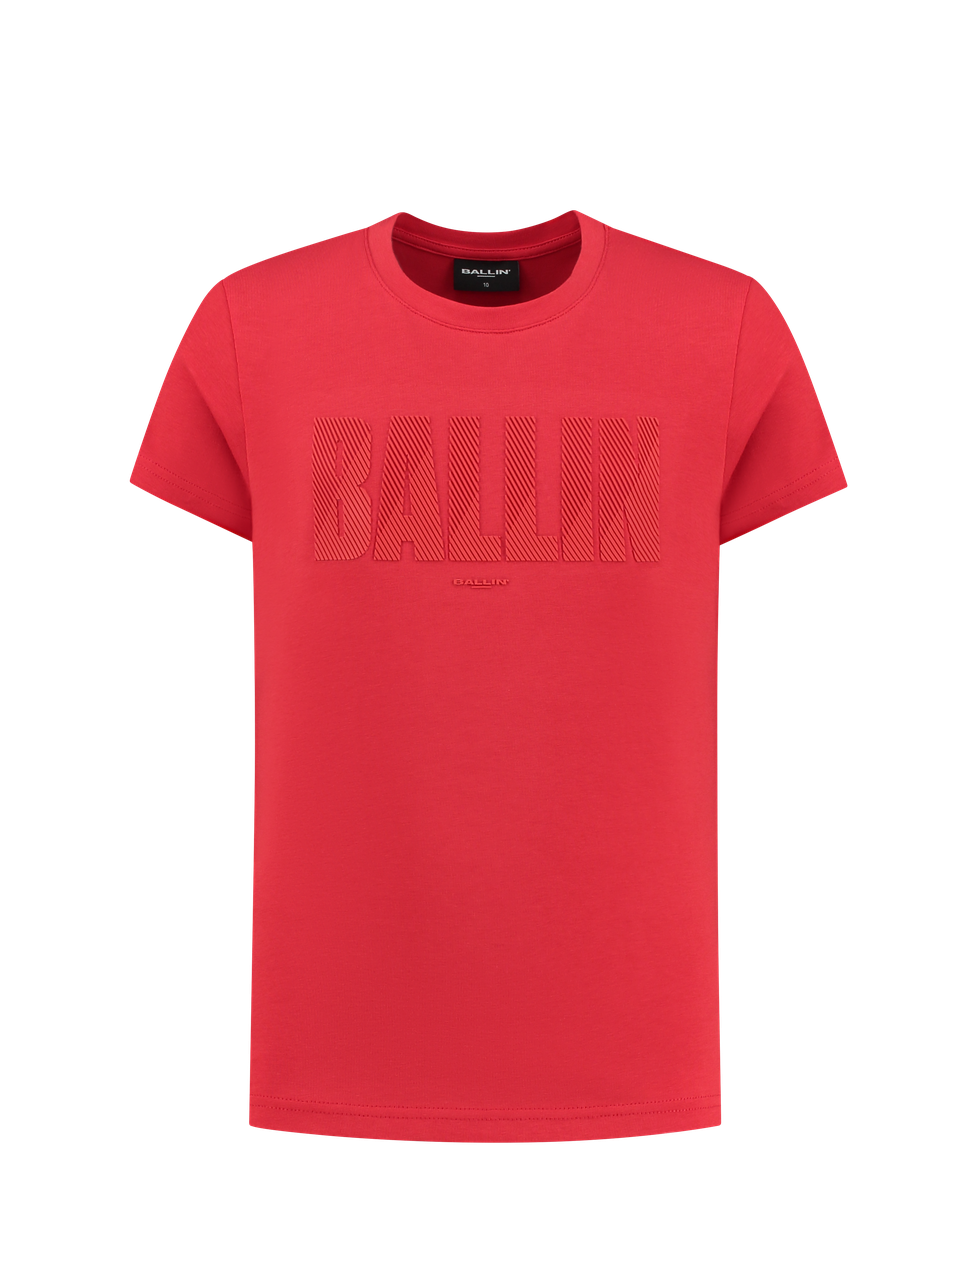 Ballin T-shirt with frontprint